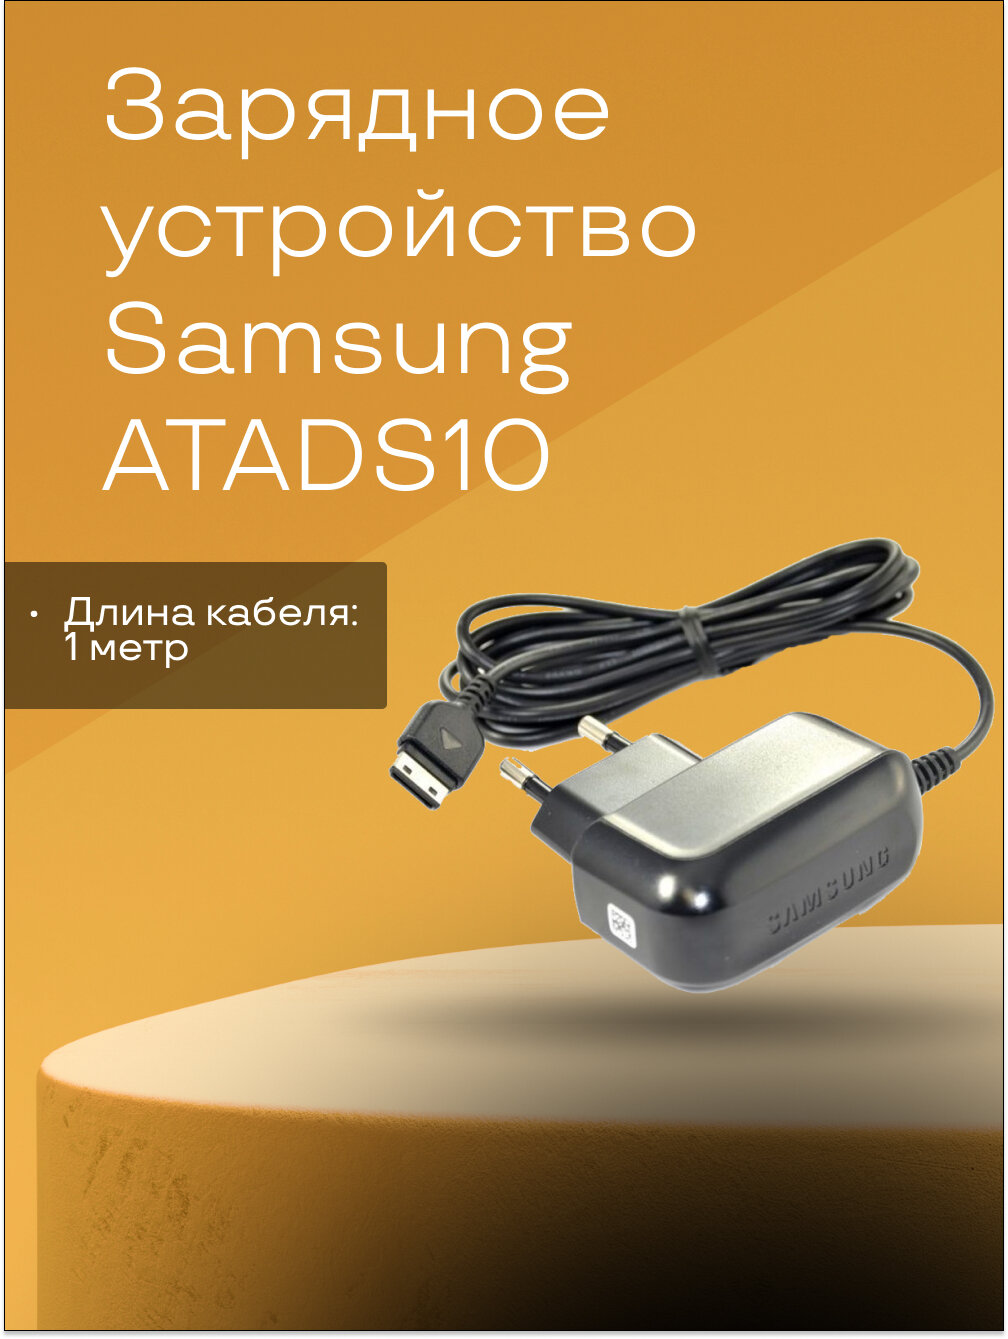 Сетевое зарядное устройство ATADS10 для Samsung S3600